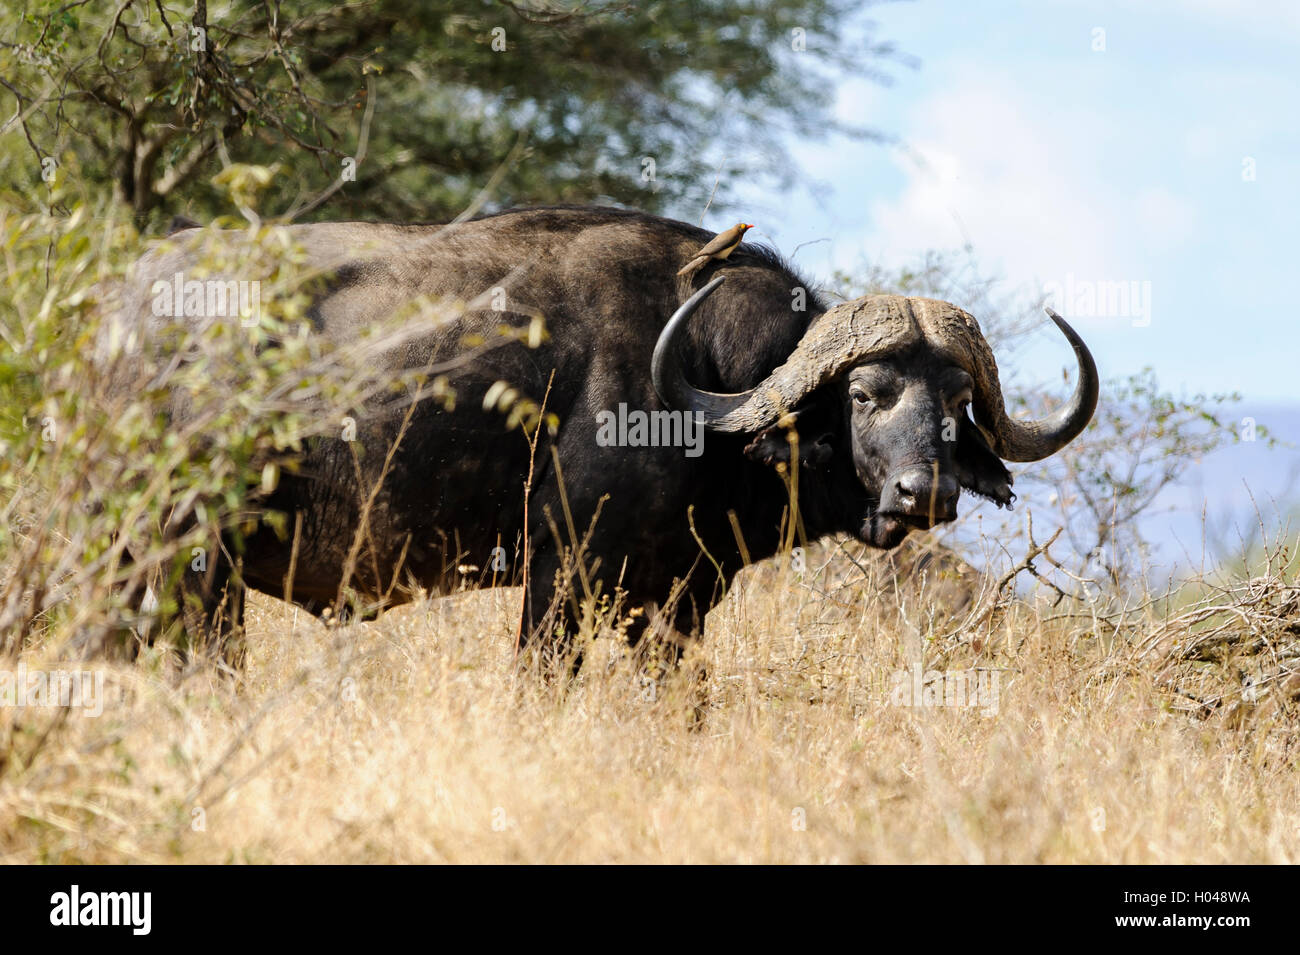 Búfalo africano o búfalo de cabo en el arbusto africano mirando la cámara, con un pájaro llamado "pájaro" o "buey" Foto de stock